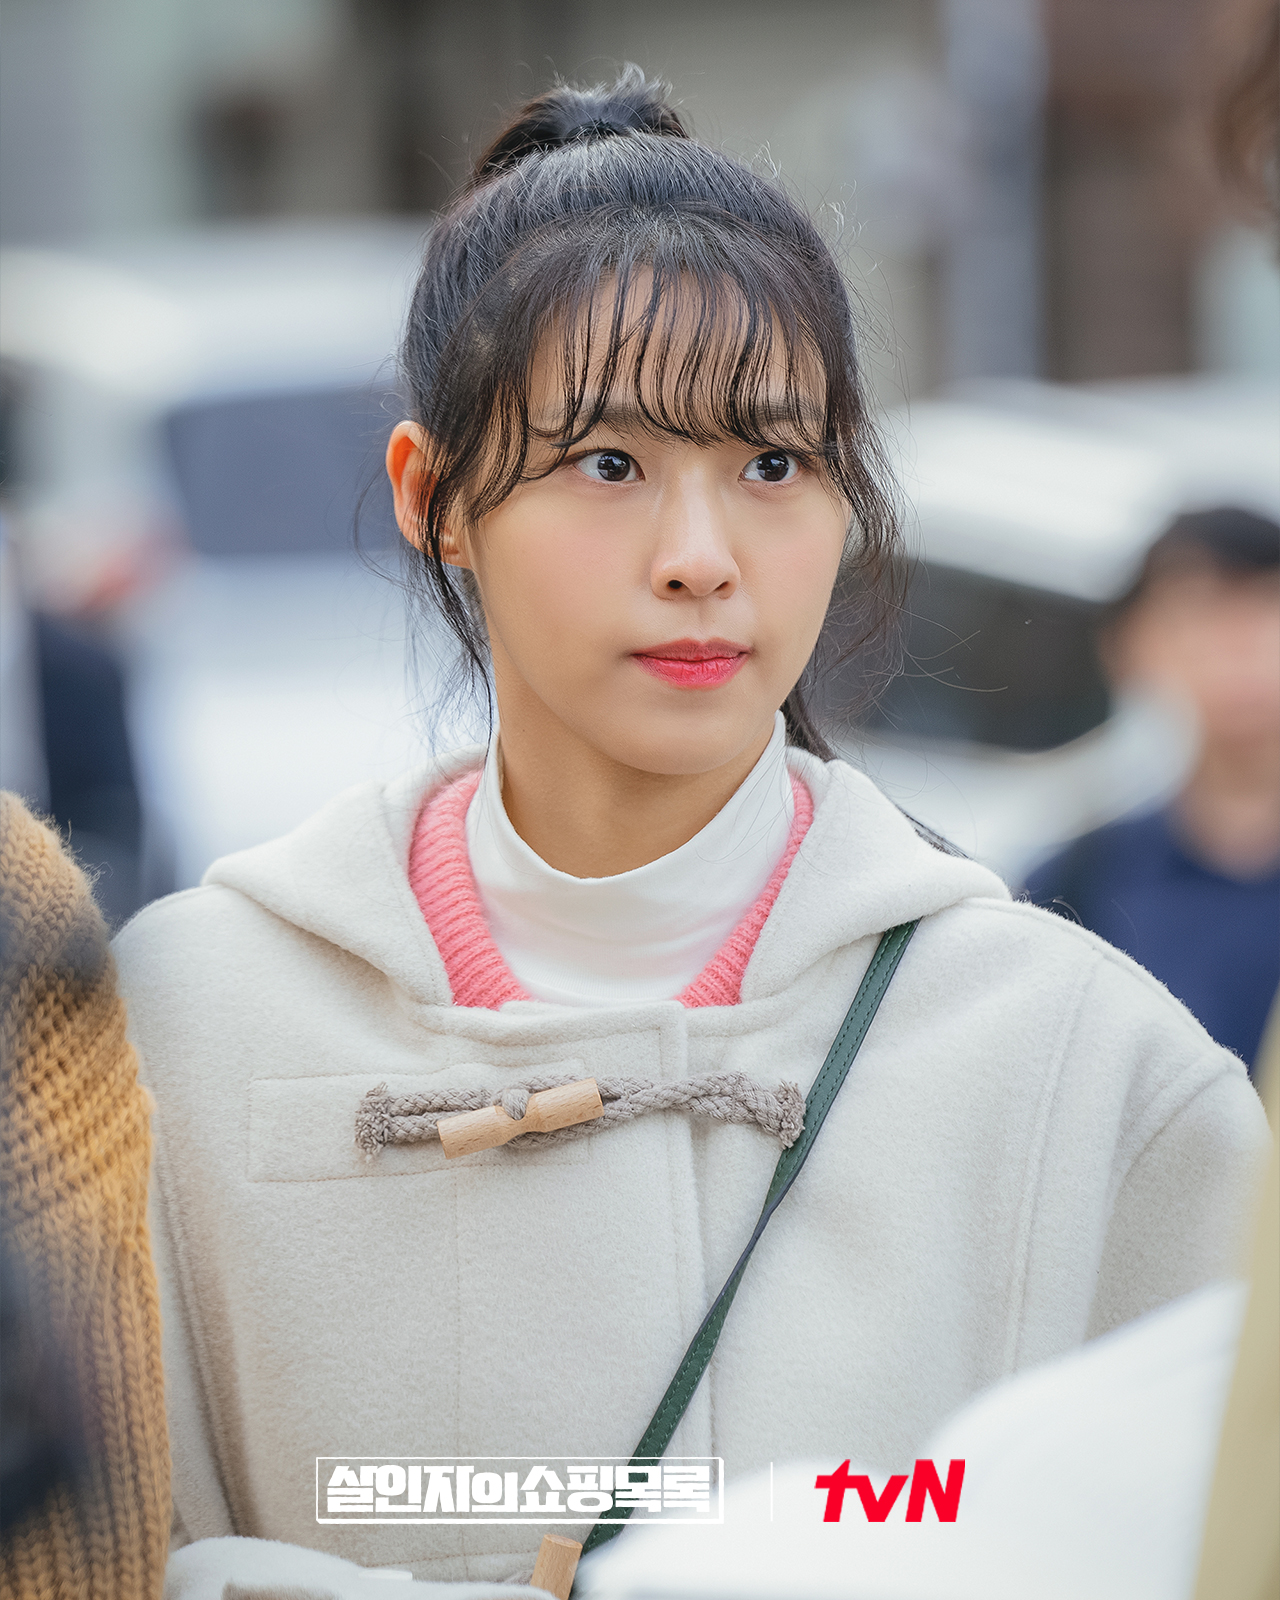 Không mê nổi visual 4 nữ chính phim Hàn 2022 này: Có cô bị dìm bởi makeup, riêng Park Min Young tong teo đến nản - Ảnh 10.